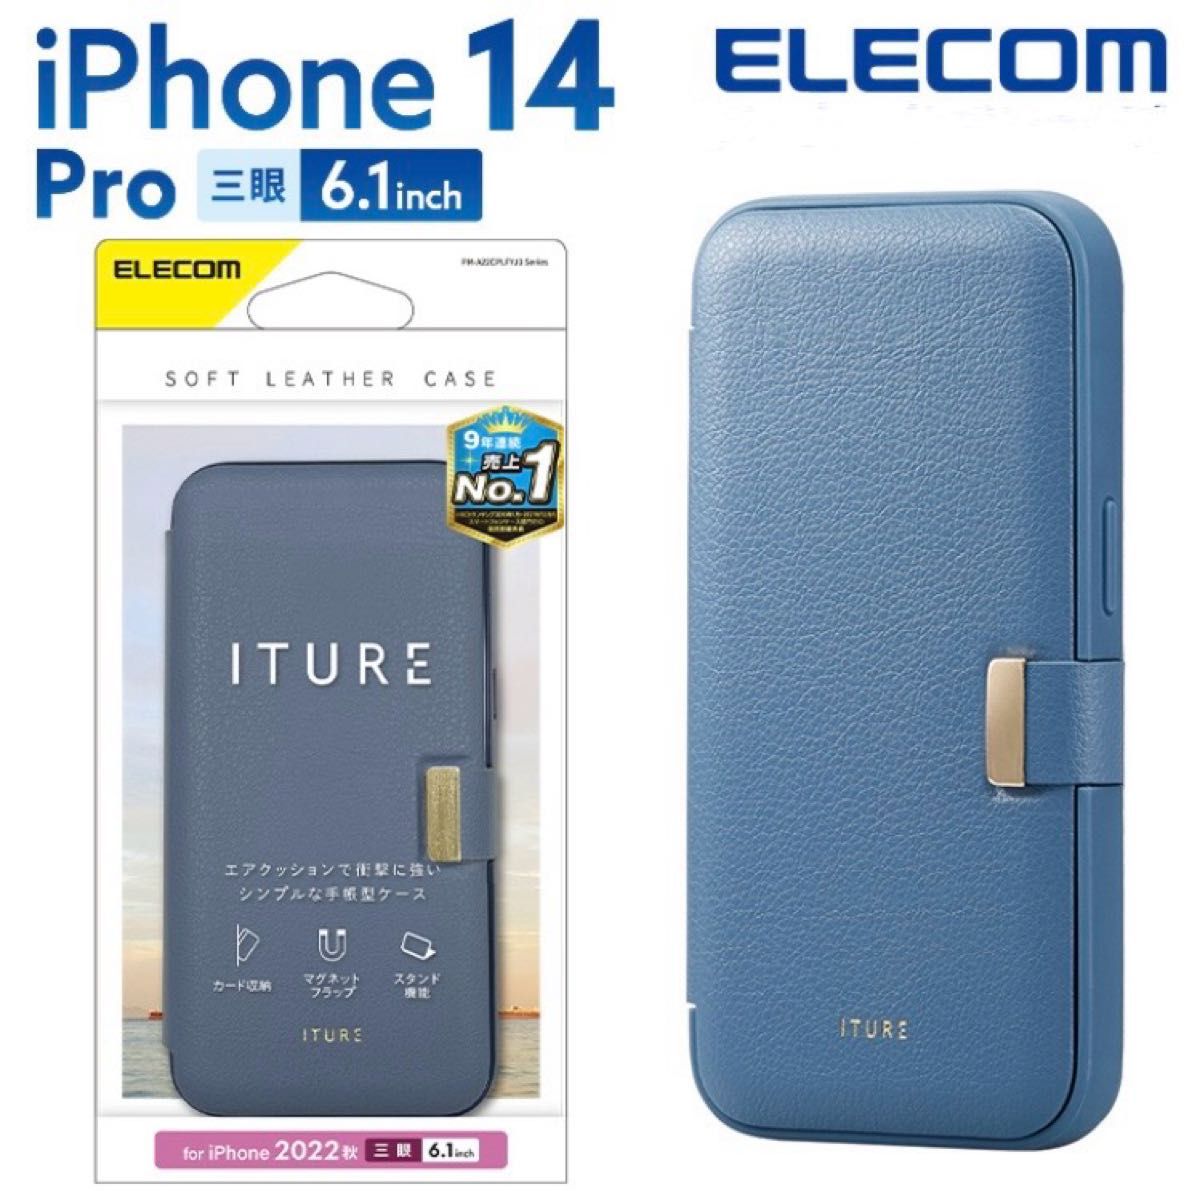 エレコム iPhone 14 Pro 用 ソフトレザーケース 手帳型 磁石付き ITURE Pro 6.1インチ